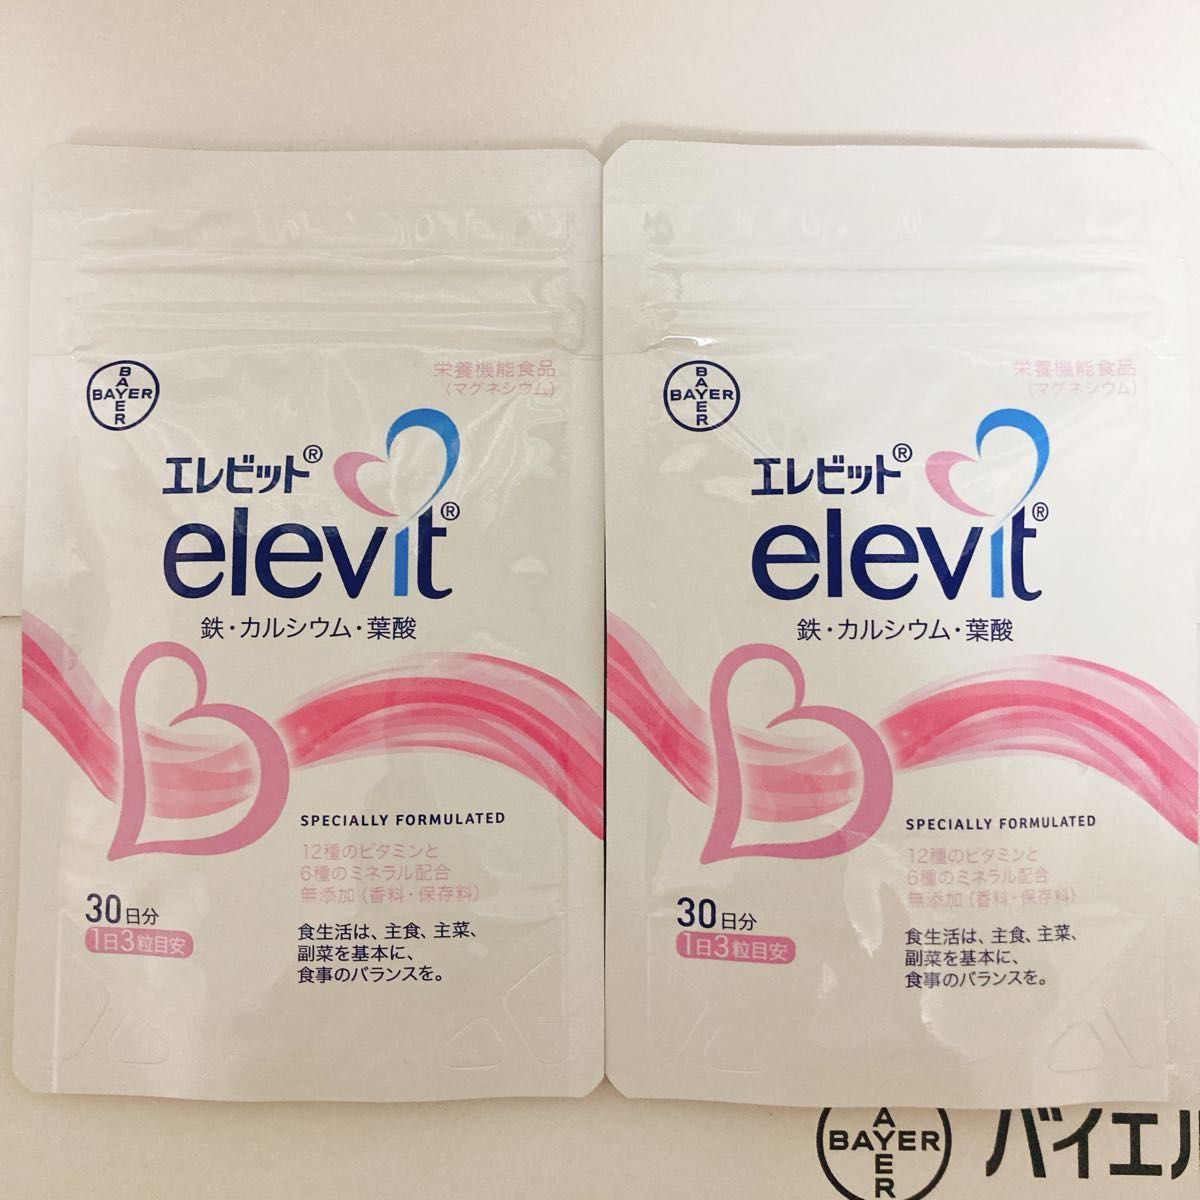 エレビット elevit 葉酸 無添加 ビタミン 　ミネラル 栄養機能食品 2袋